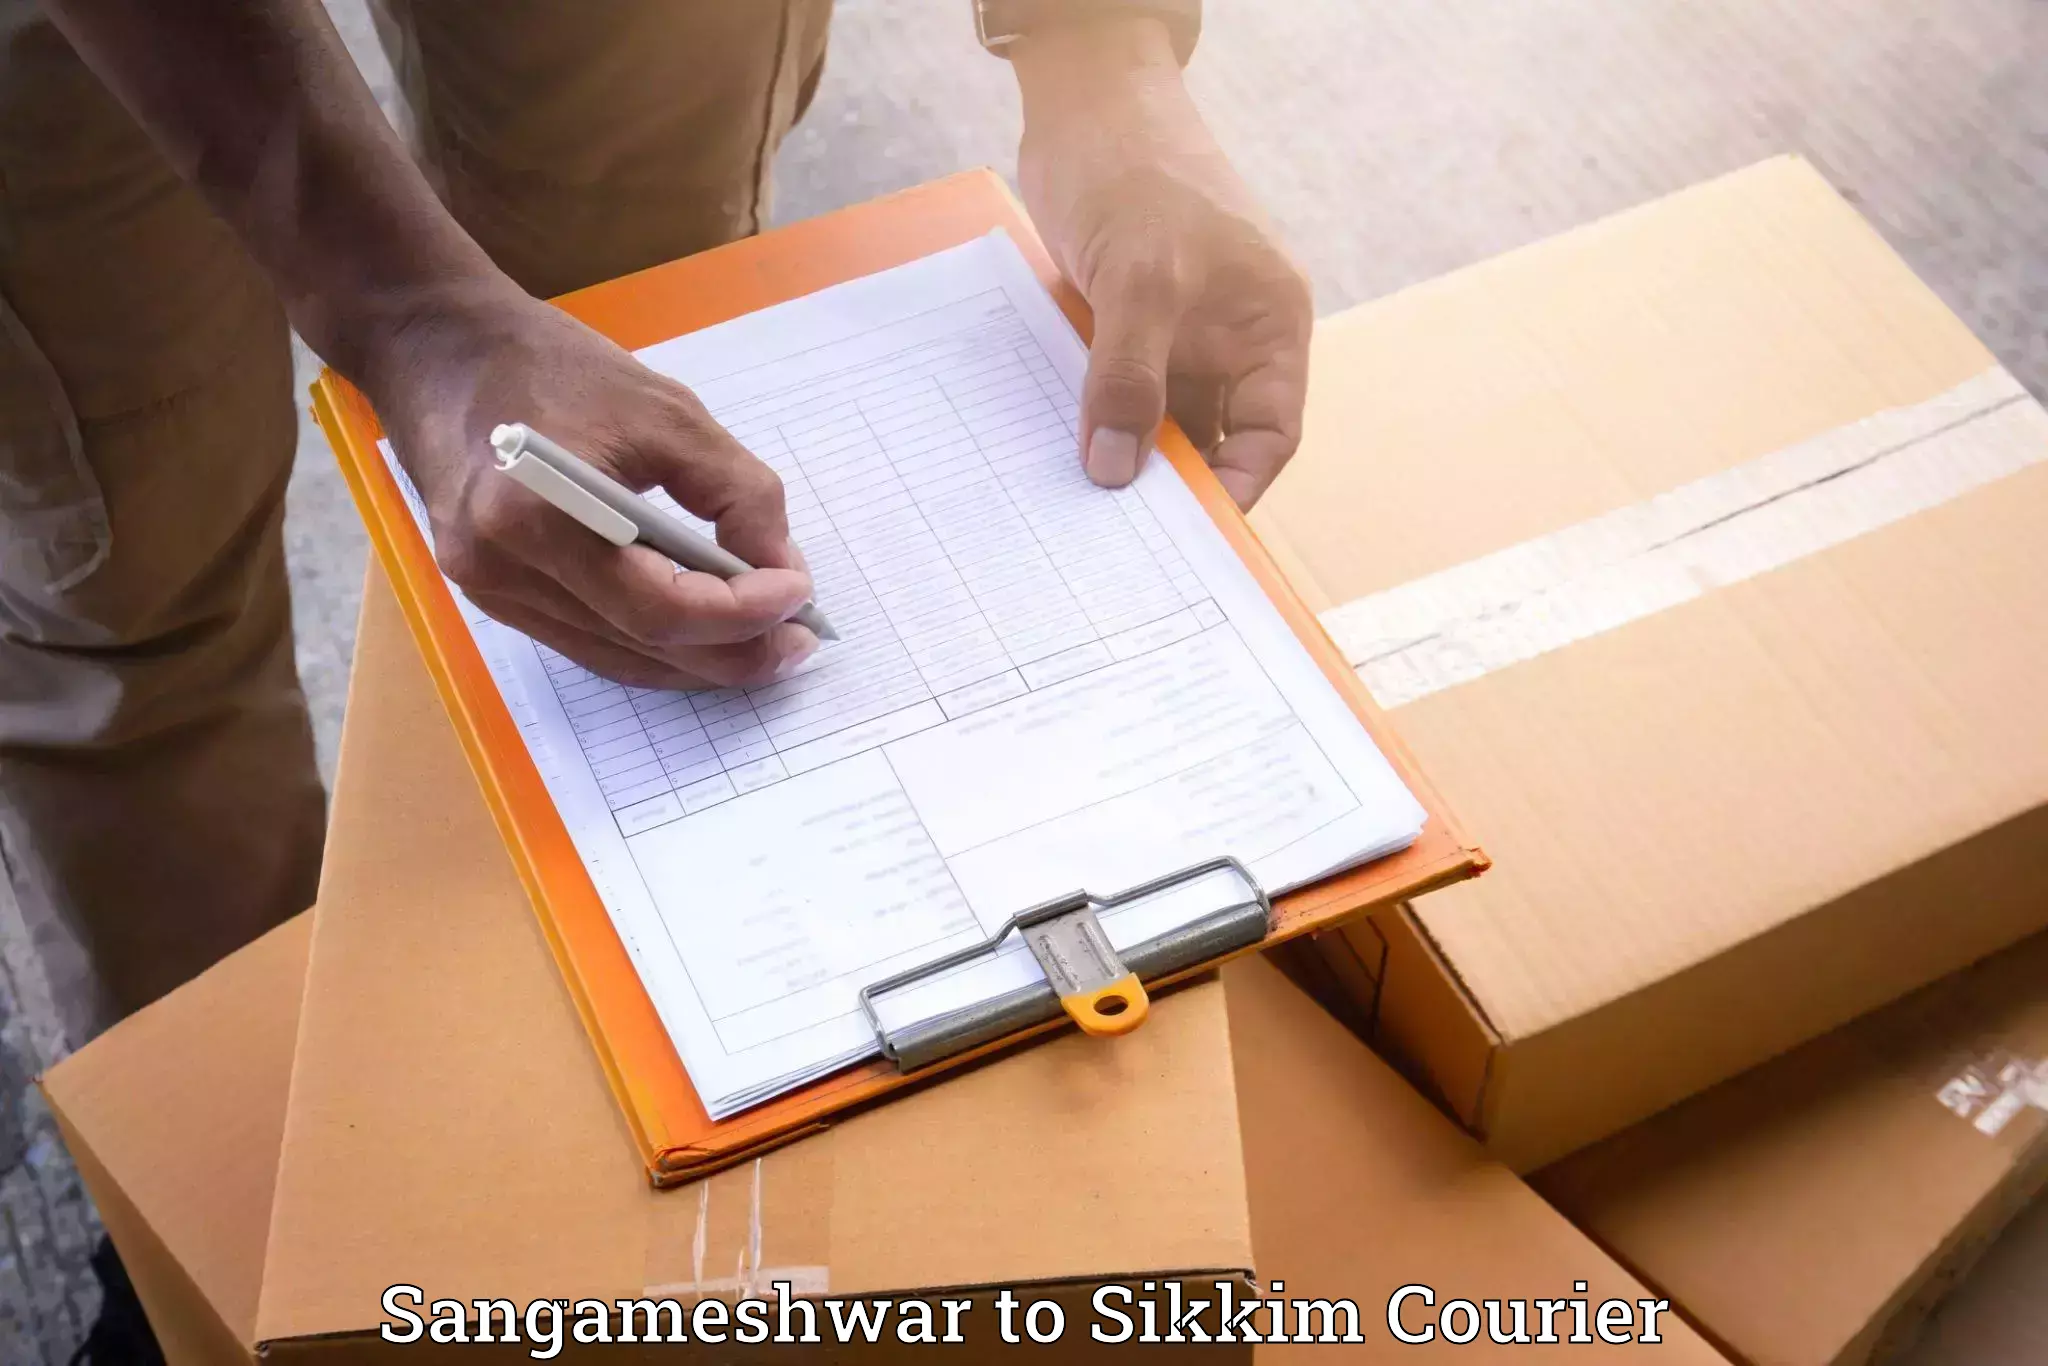 Furniture moving assistance Sangameshwar to Mangan